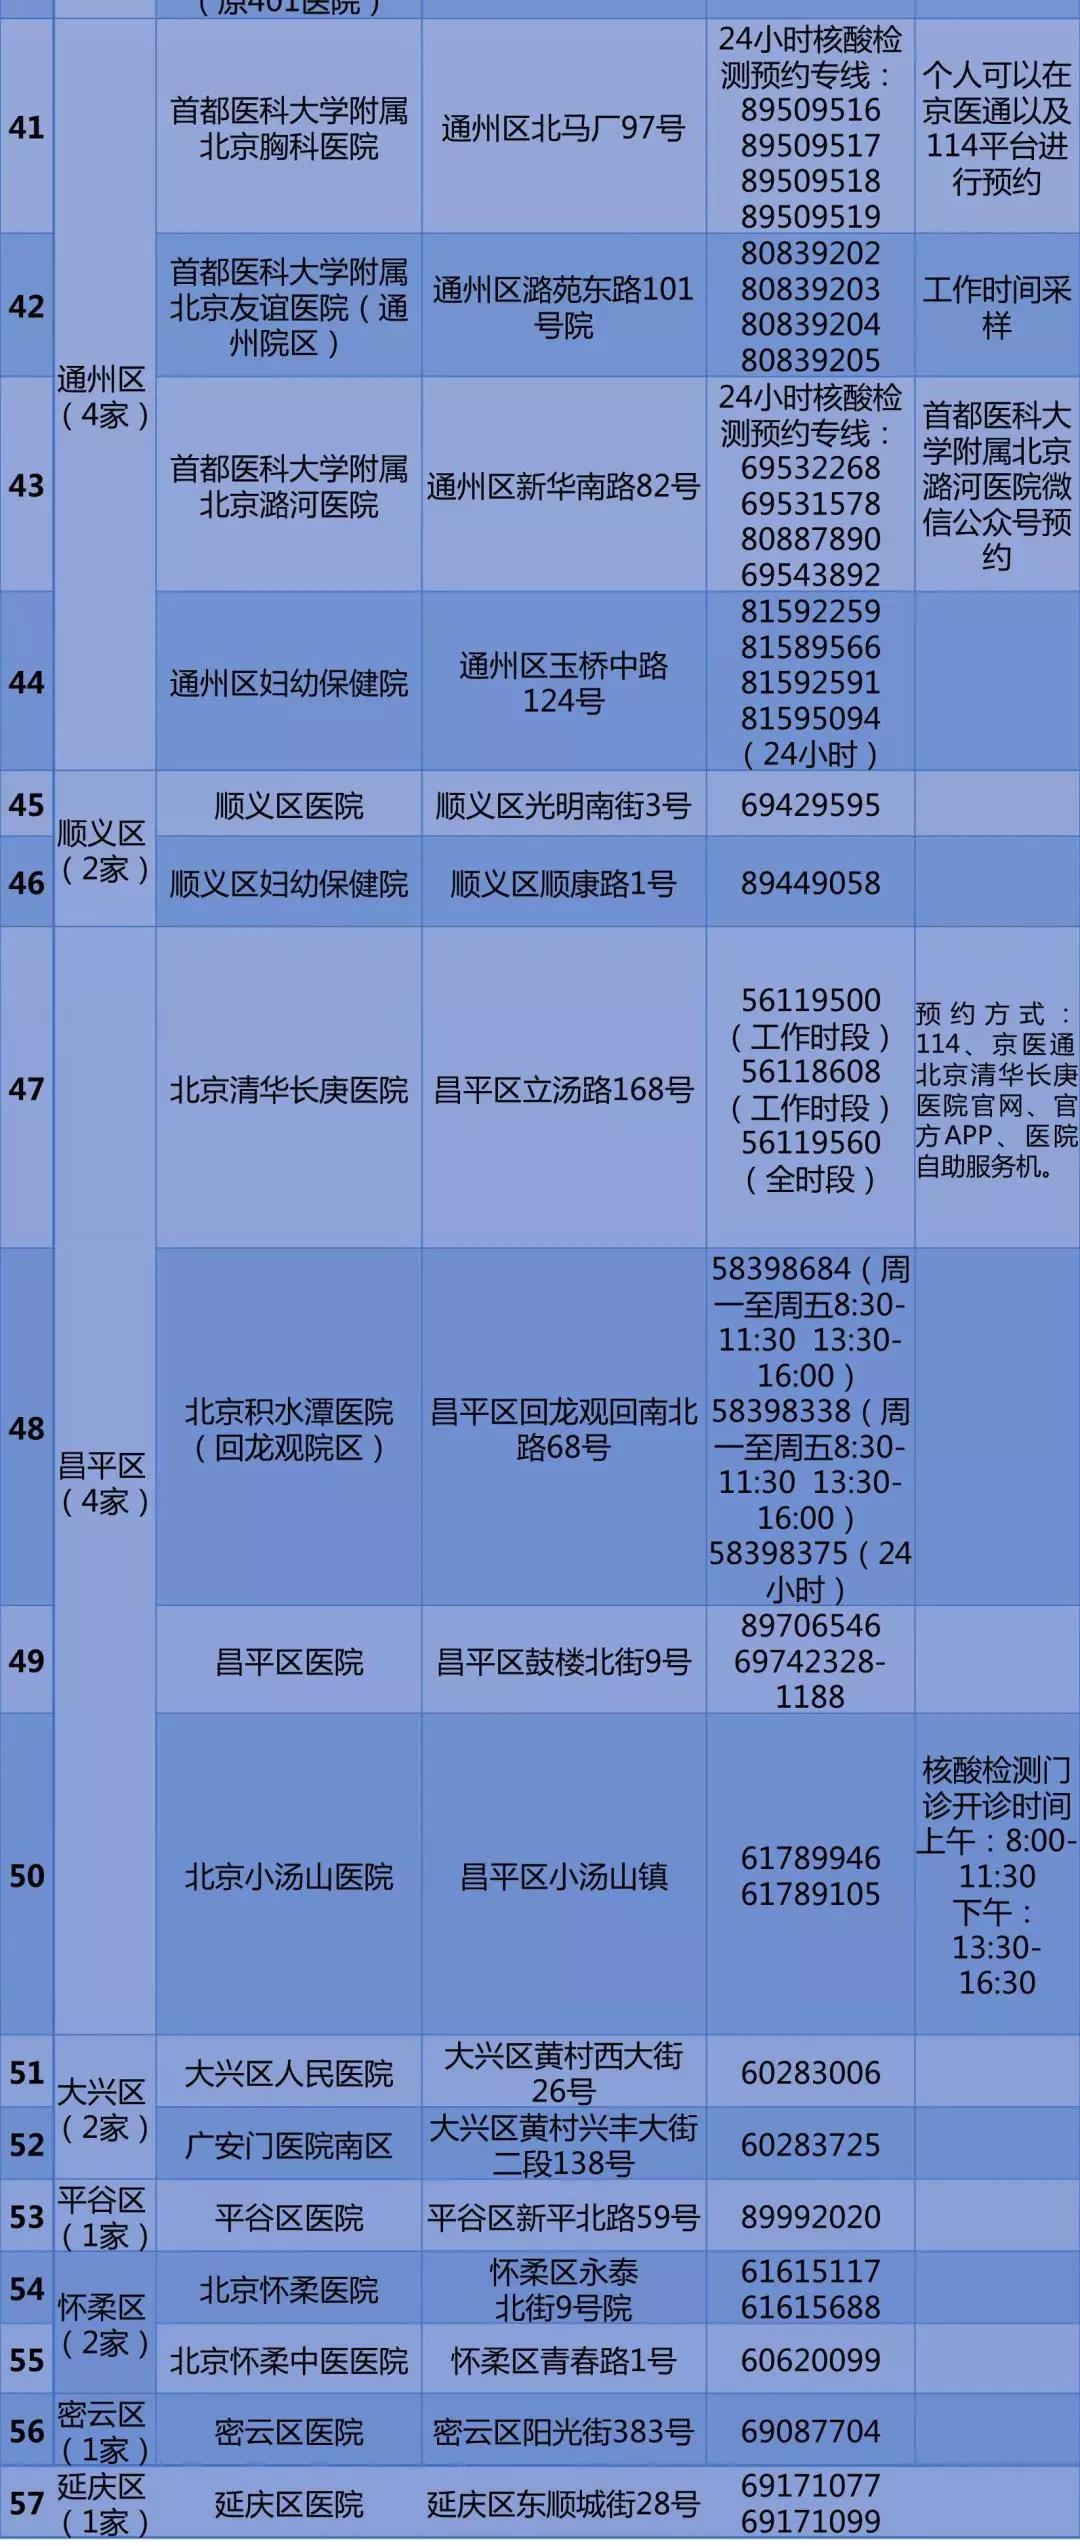 北京公布57家公立医疗机构核酸检测预约电话